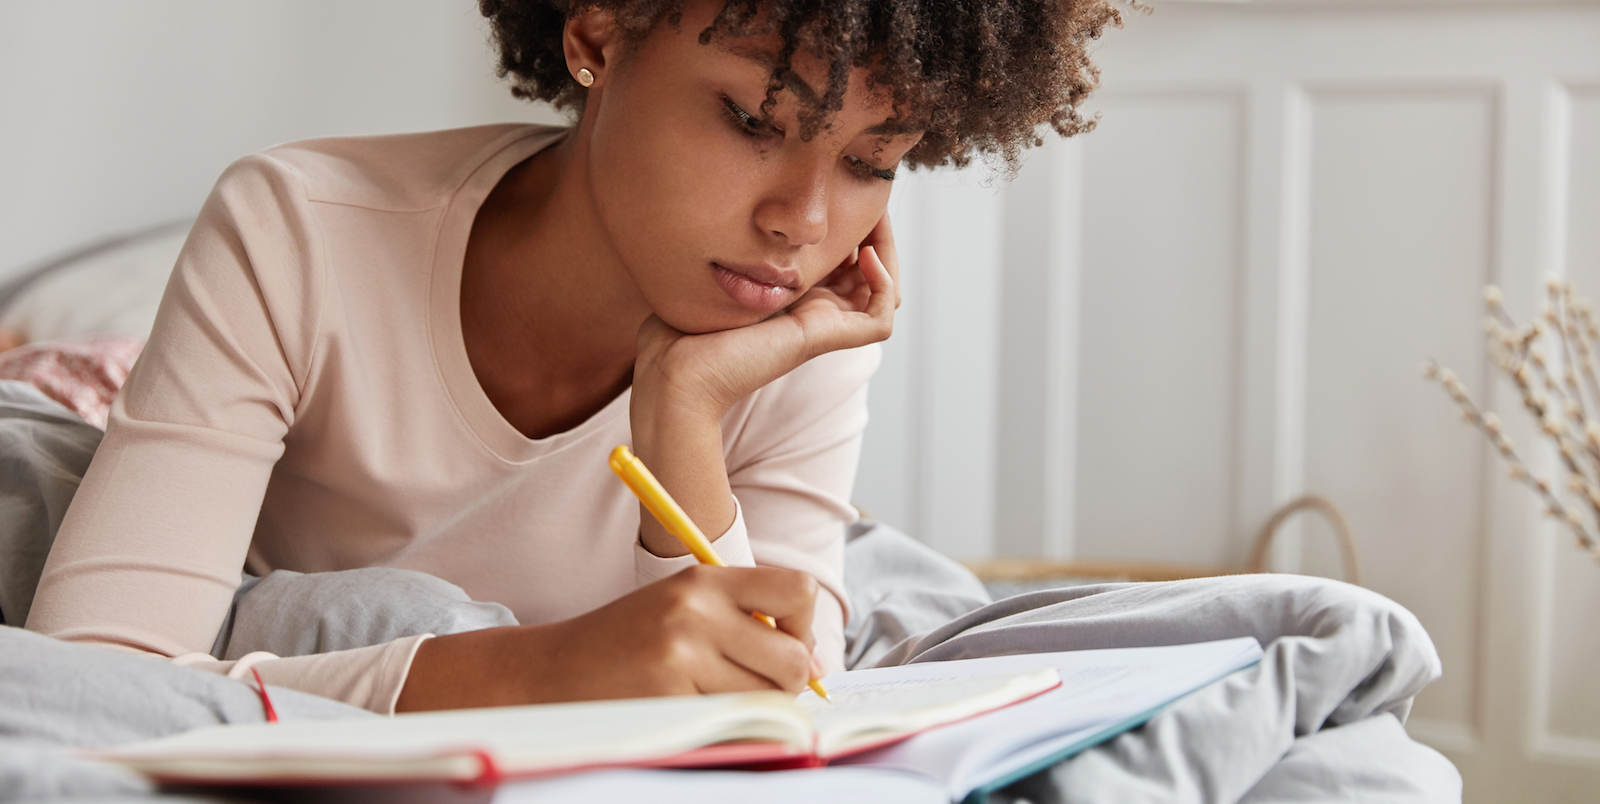 Writing collection. Темнокожая девушка читает книгу. Девушка с ручкой в руке. Фото задумчивого студента по дизайну девушка.